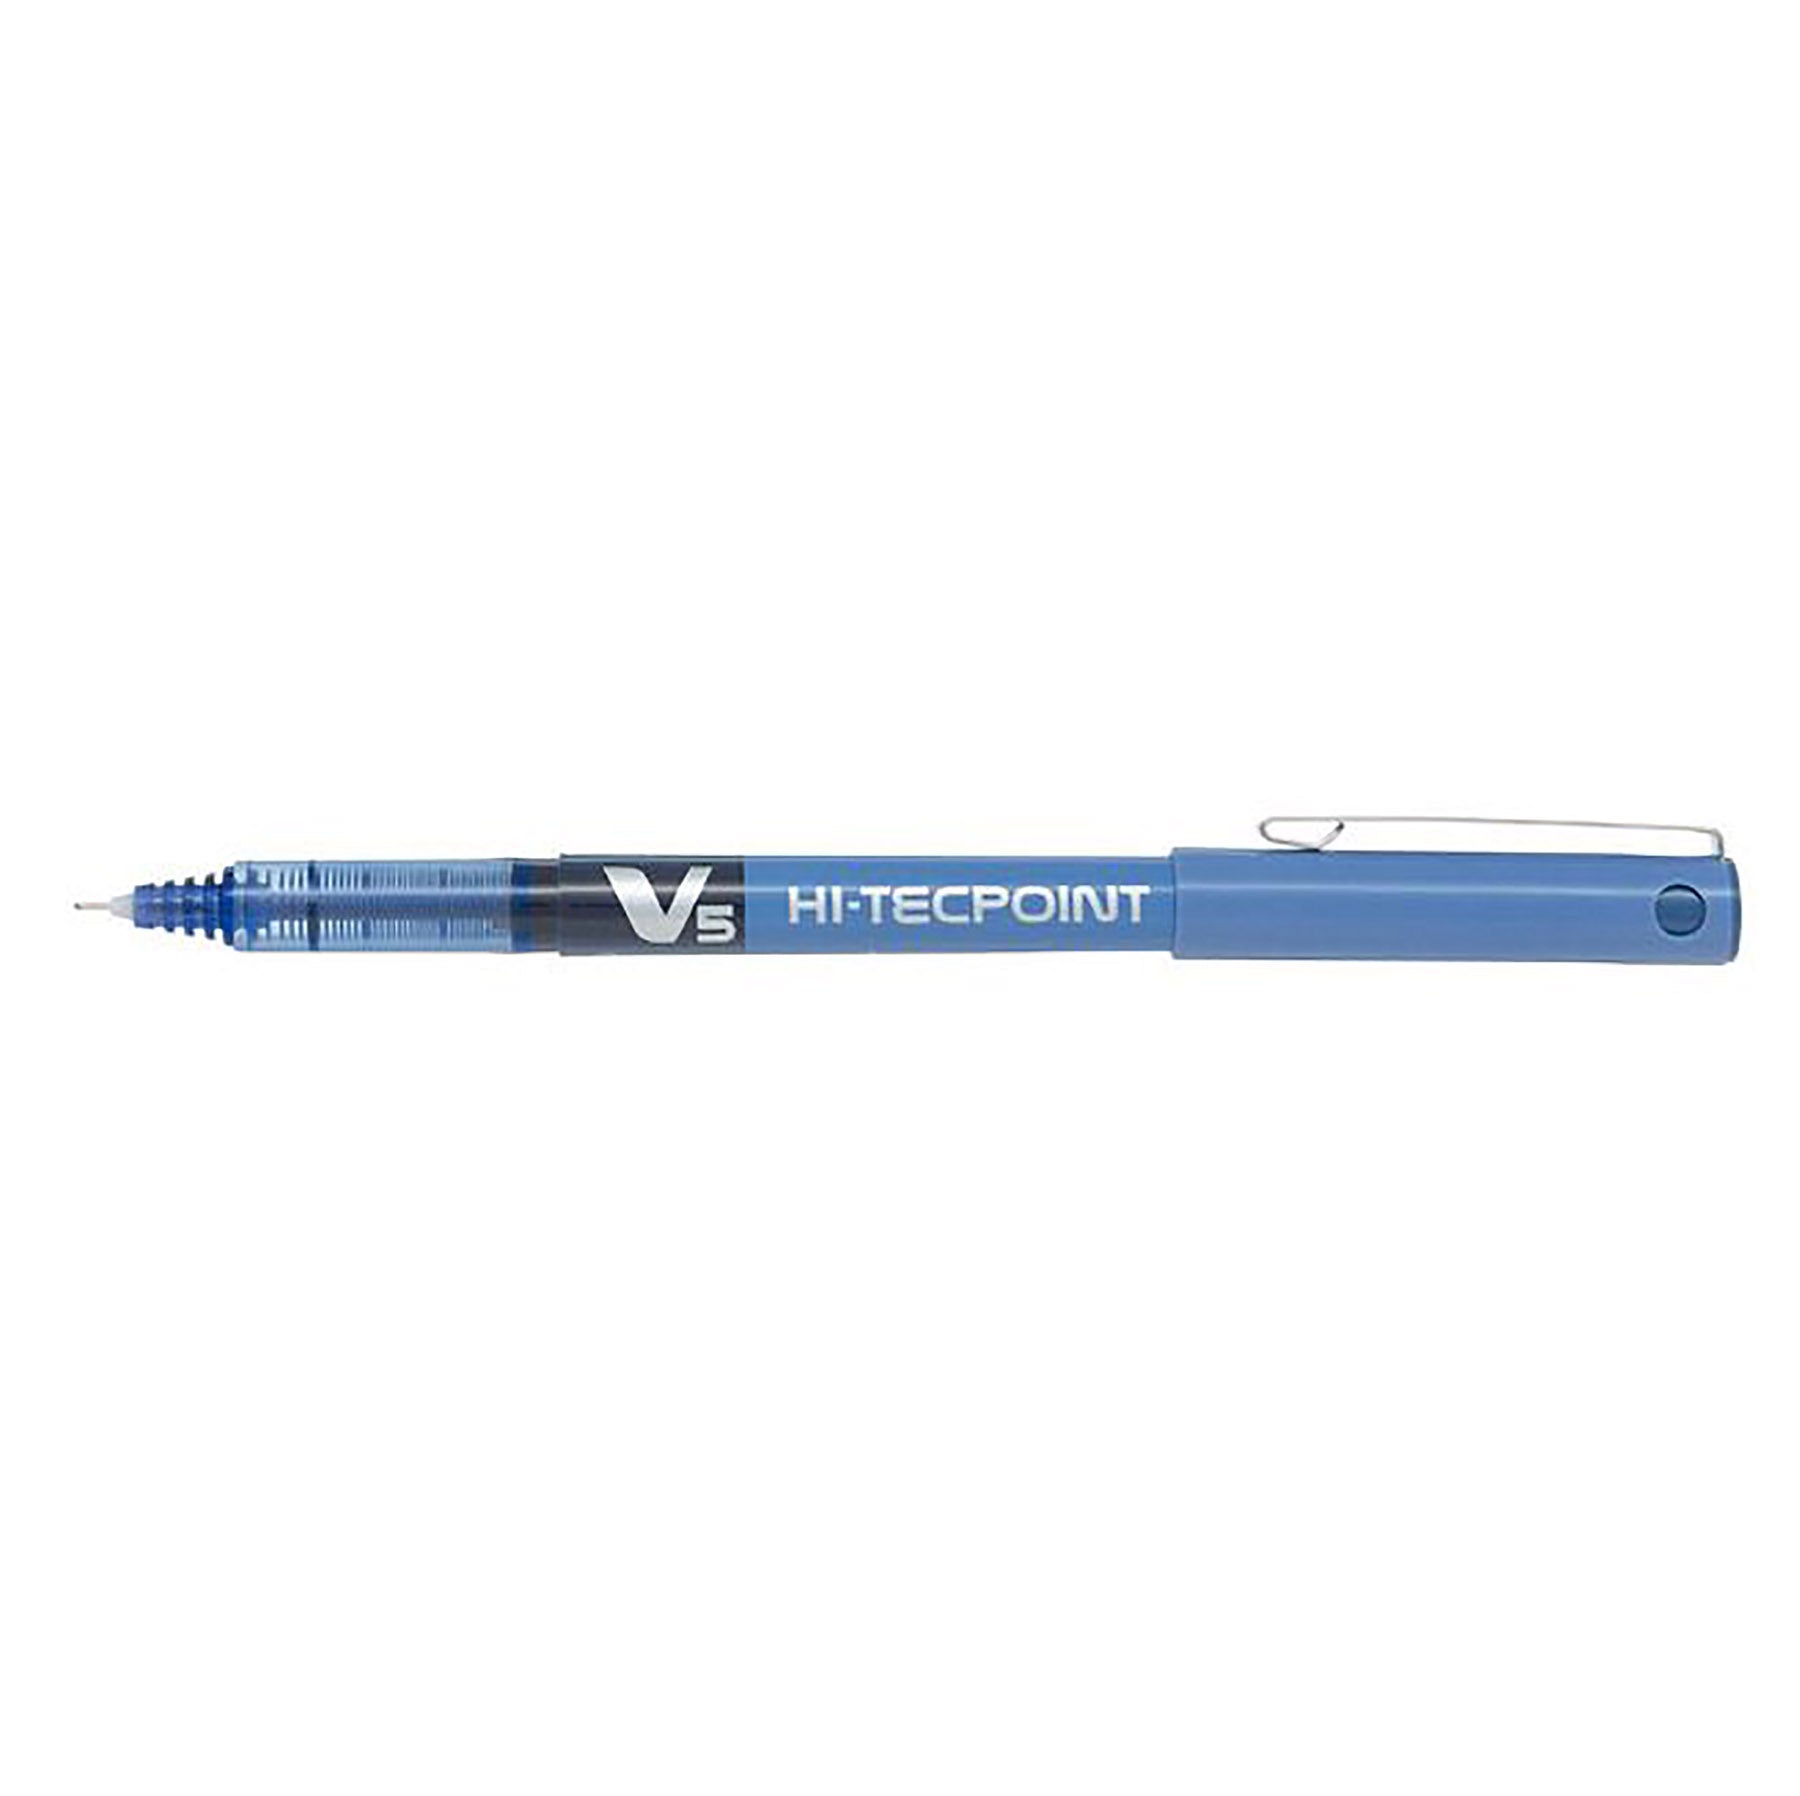 Pilot Hi-Tecpoint Pen with Cap - Blue Ink 0.5mm